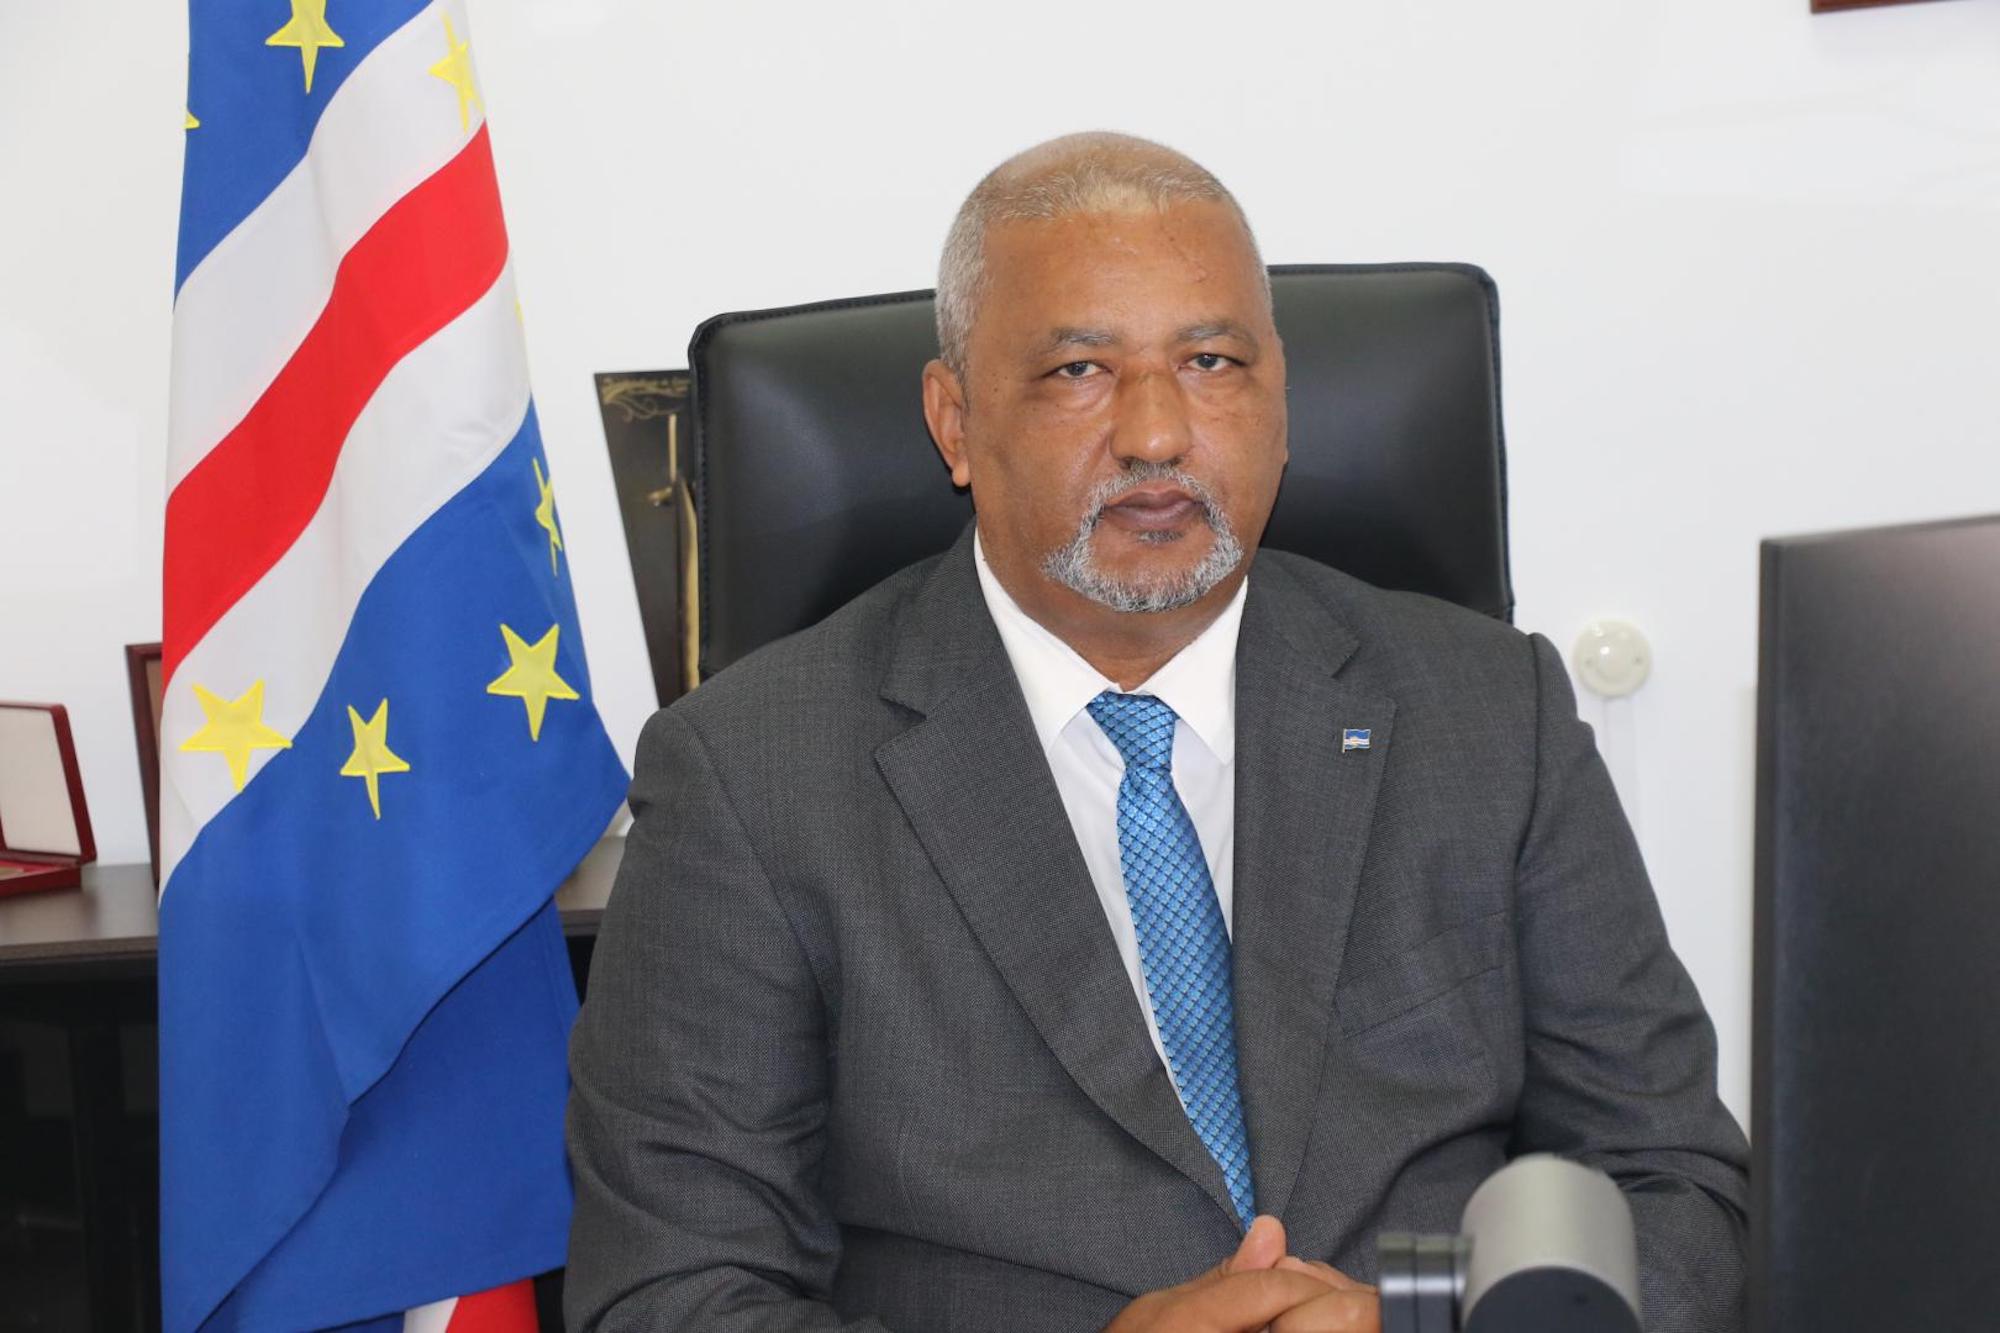 Arlindo do Rosário, Cabo Verde’s former Minister of Health